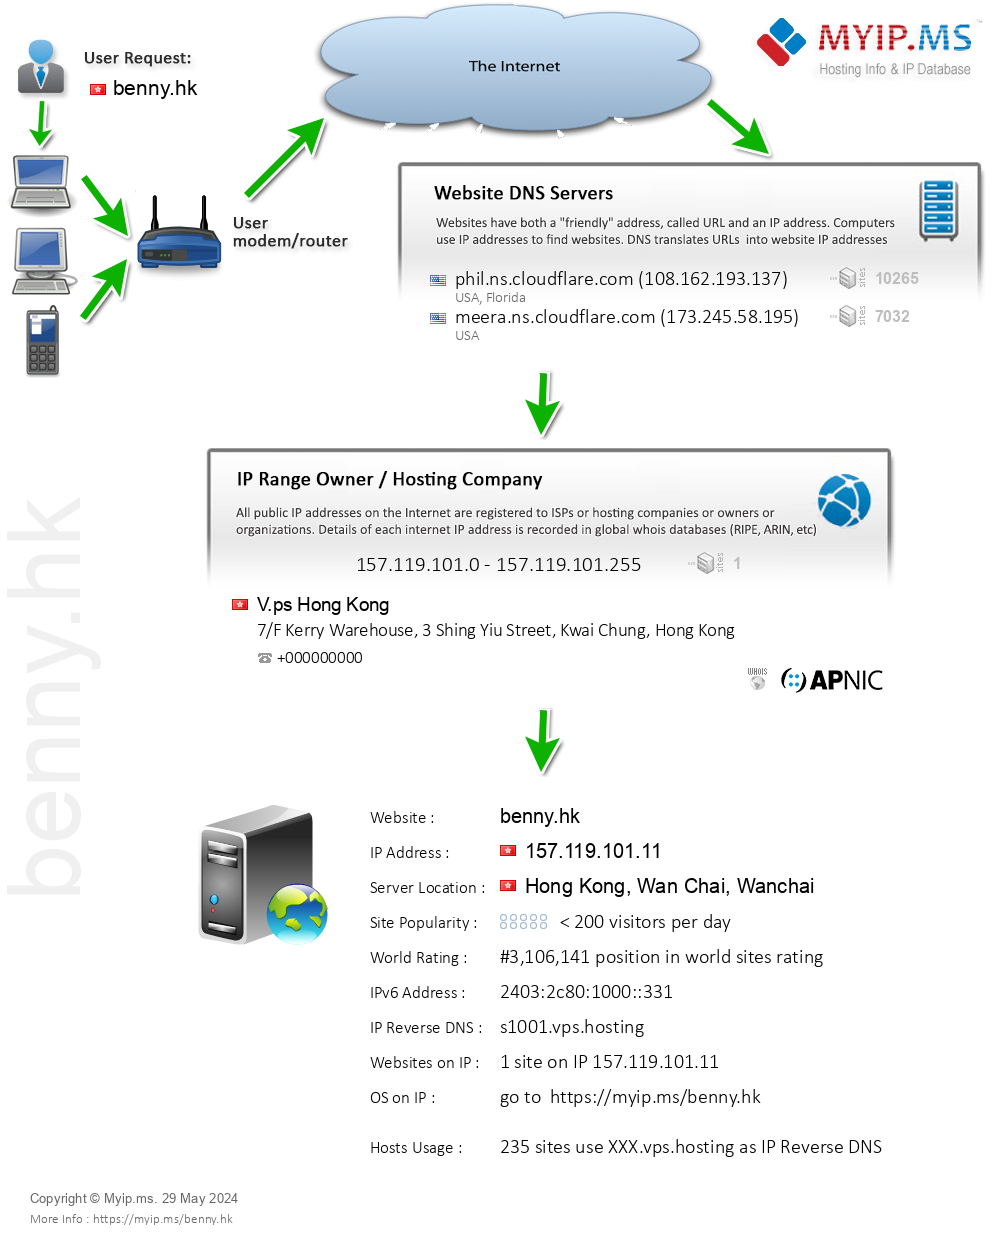 Benny.hk - Website Hosting Visual IP Diagram